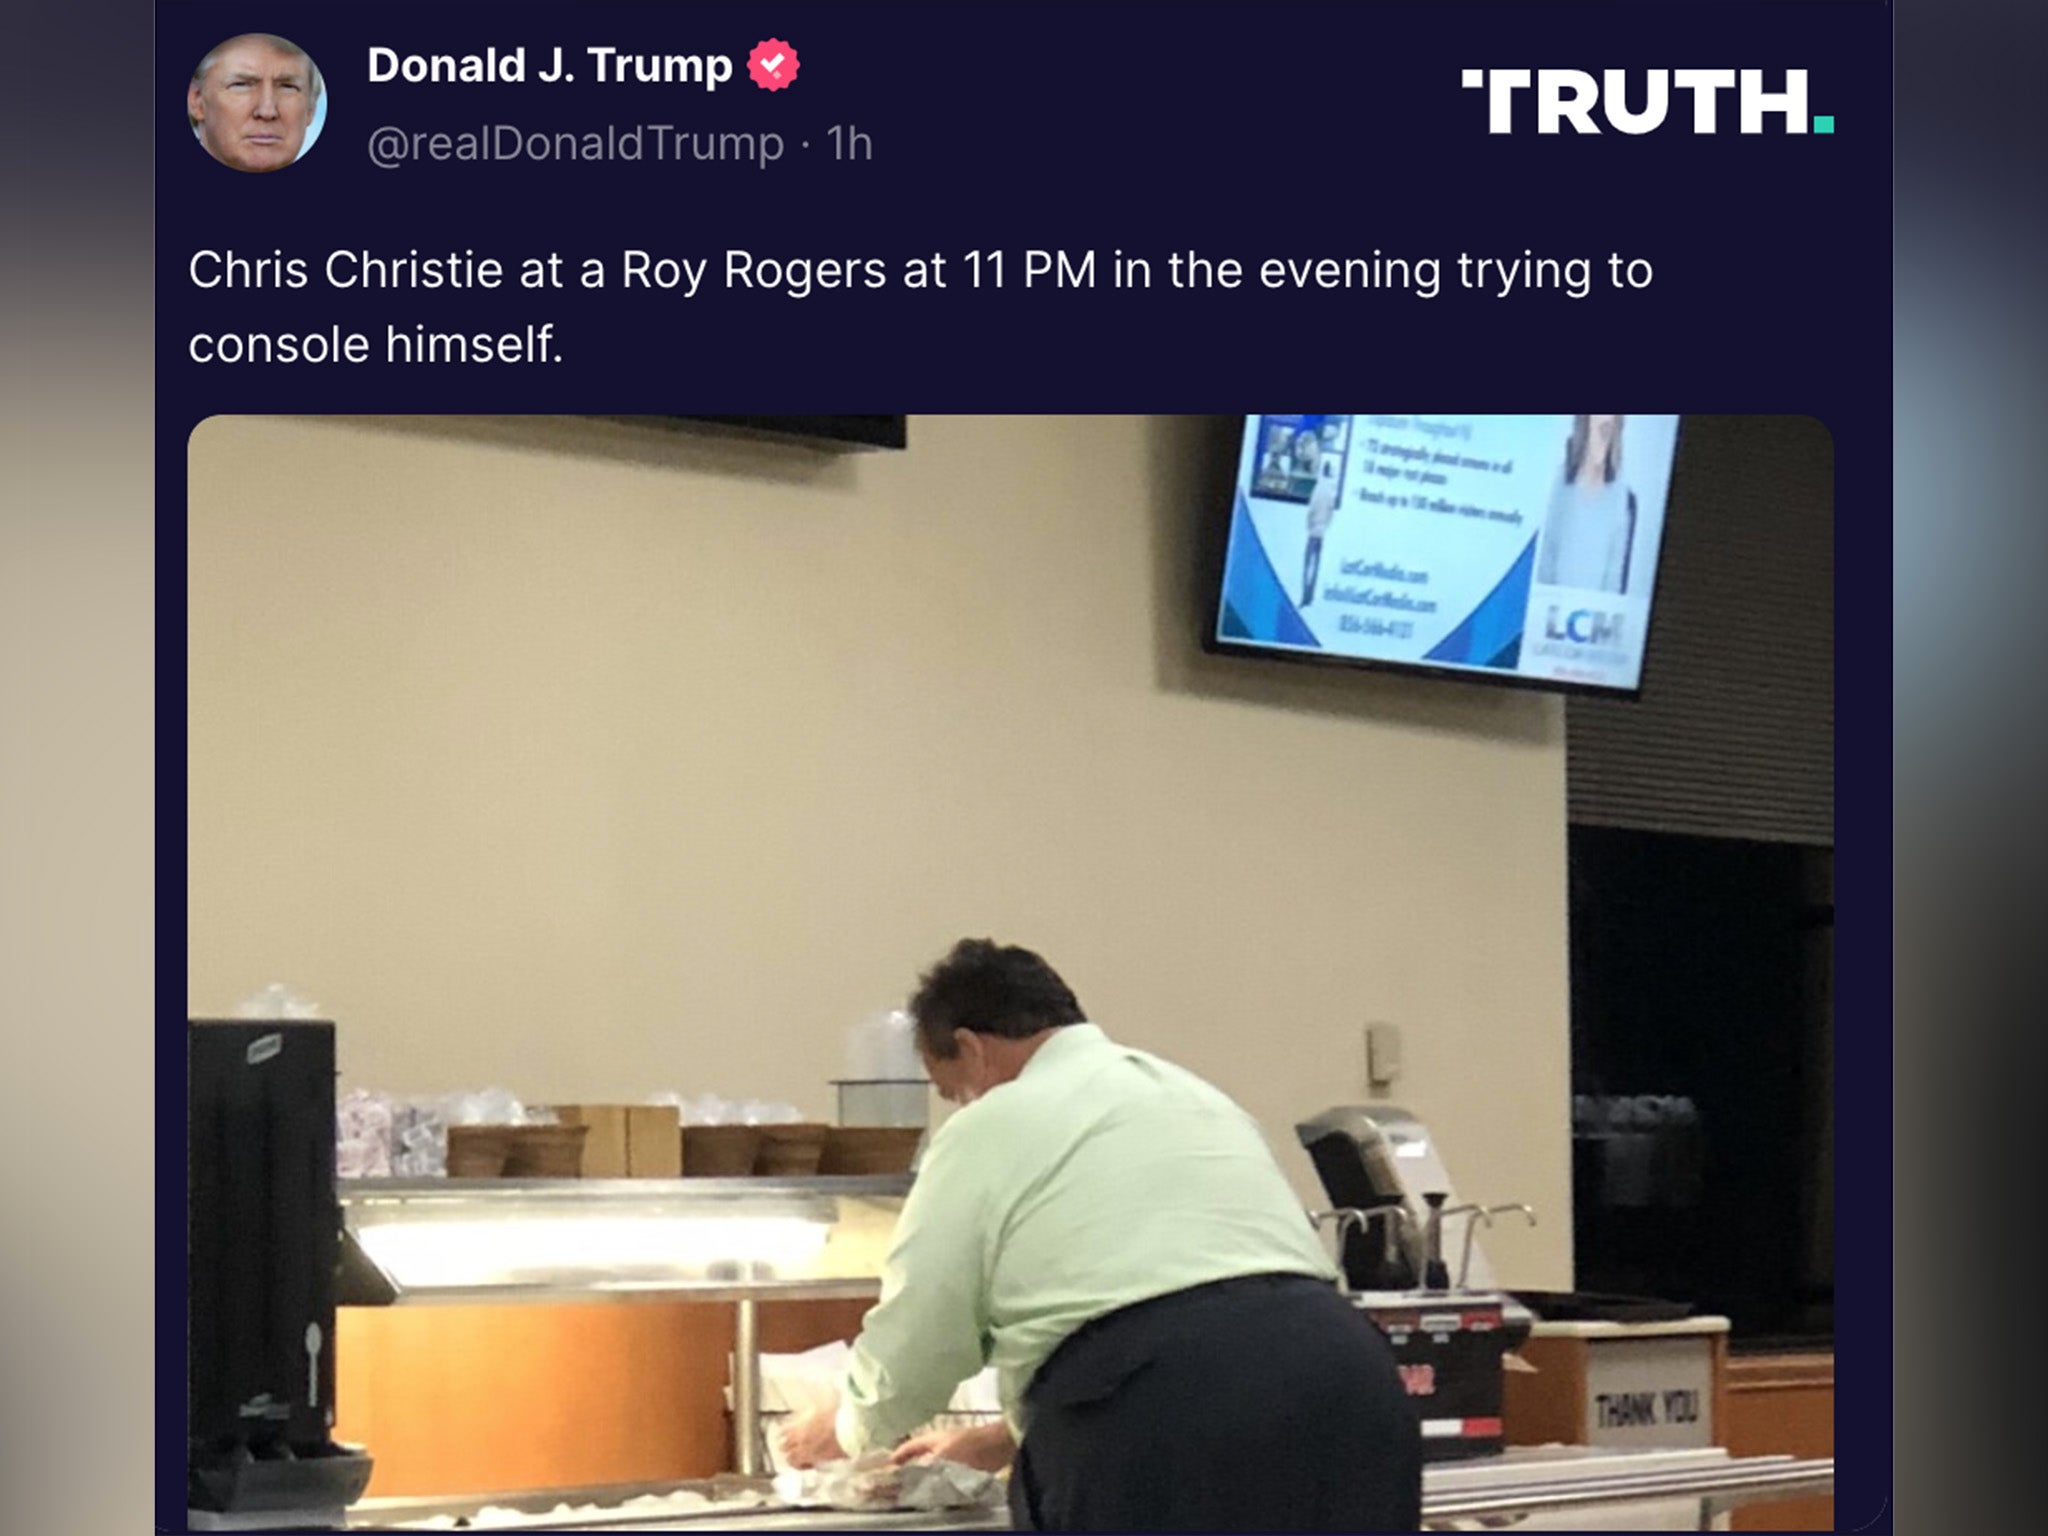 Donald Trumpp comparte una imagfen en Truth SOcial de un hombre inclinado sobre un buffet, con un mensaje insultante contra el exgobernador republicano de Nueva Jersey Chris Christie